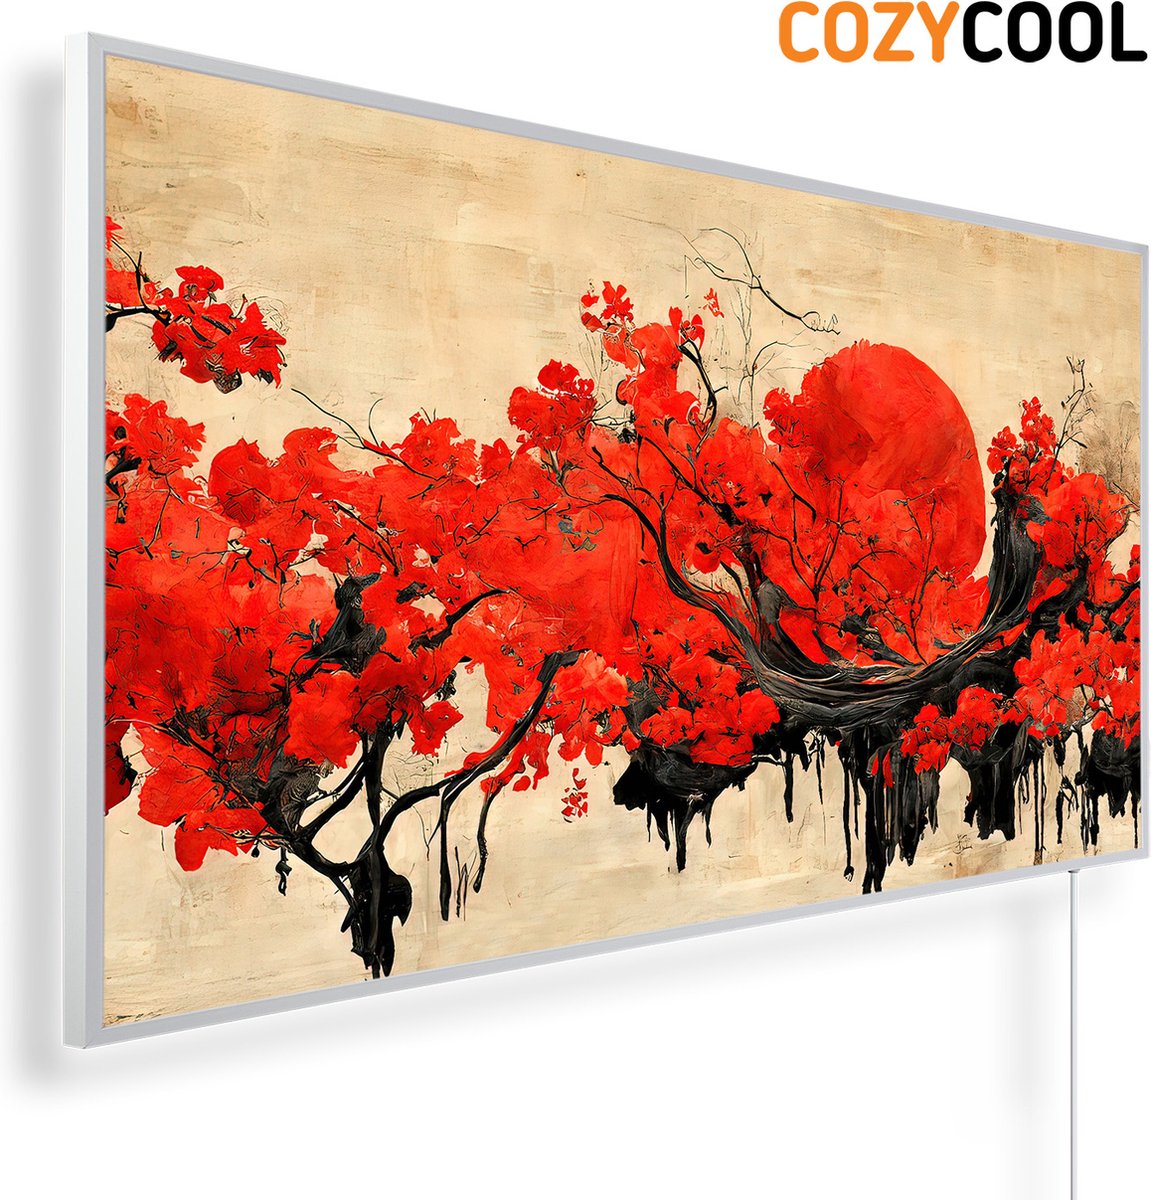 Infraroodpaneel met afbeelding | Traditioneel Chinees inktrood landschap | 1200 Watt | Witte lijst | Infrarood verwarmingspaneel | Infrarood paneel | Infrarood verwarming